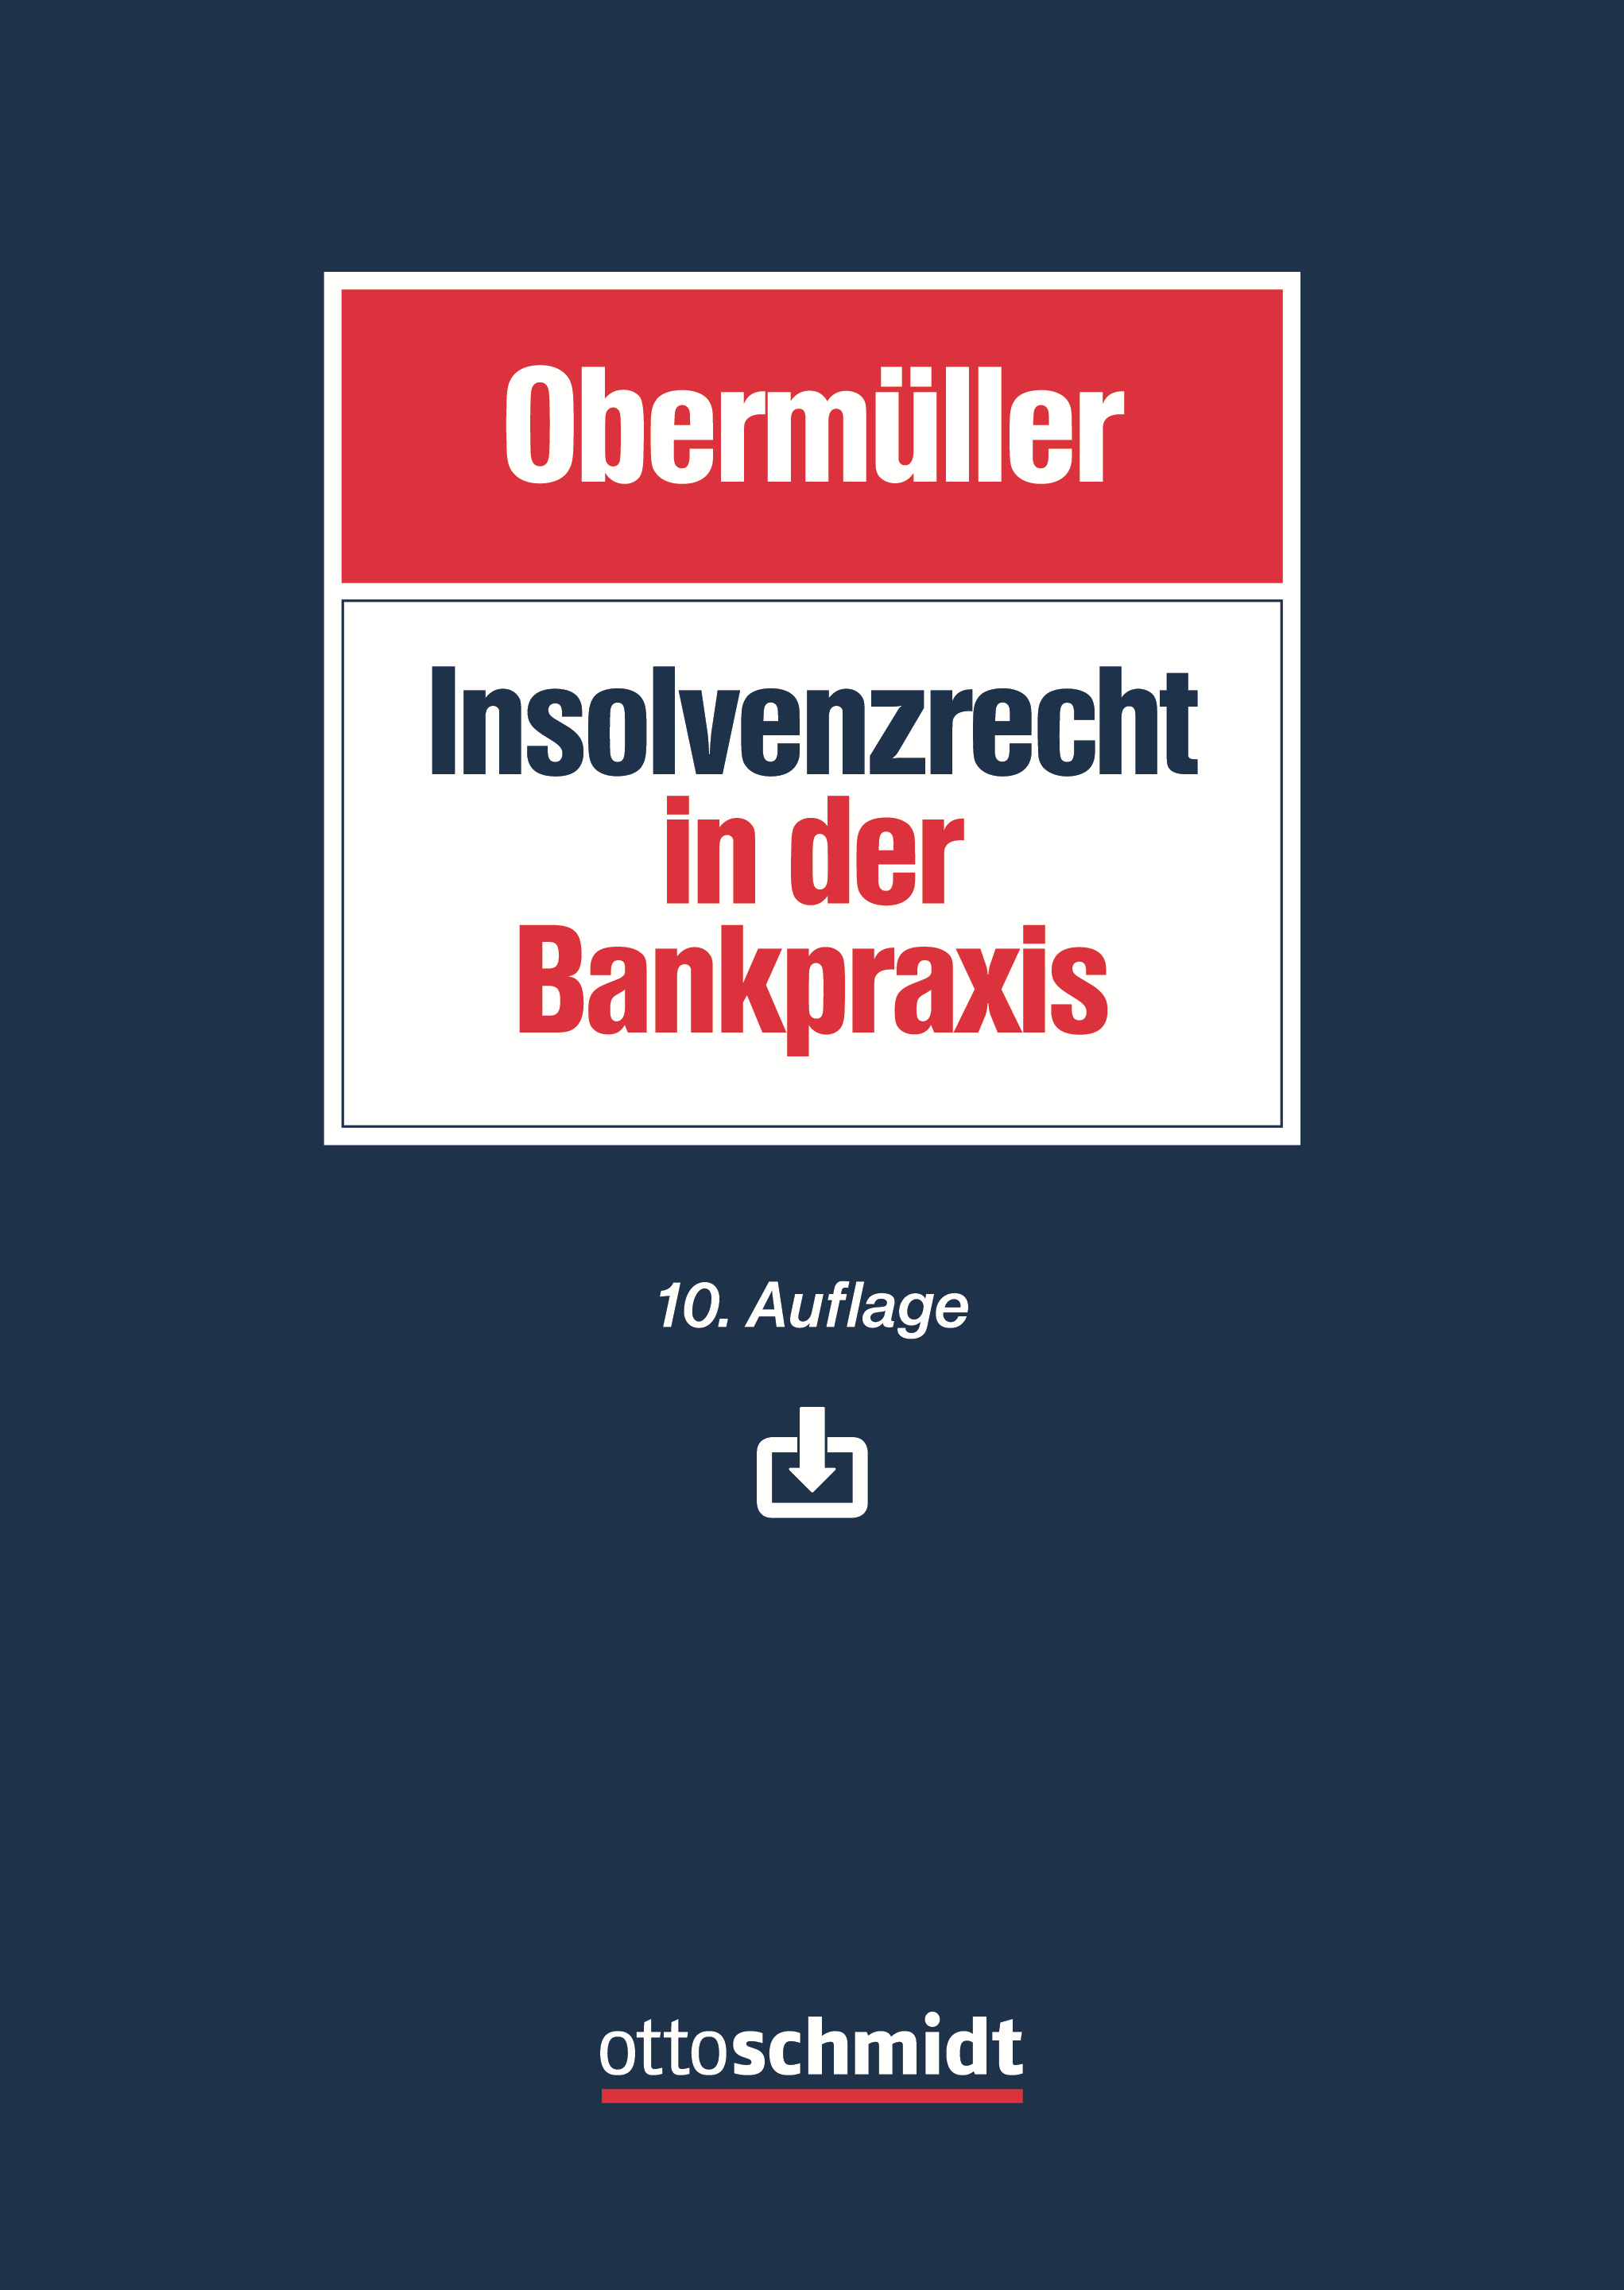 Abbildung: Insolvenzrecht in der Bankpraxis